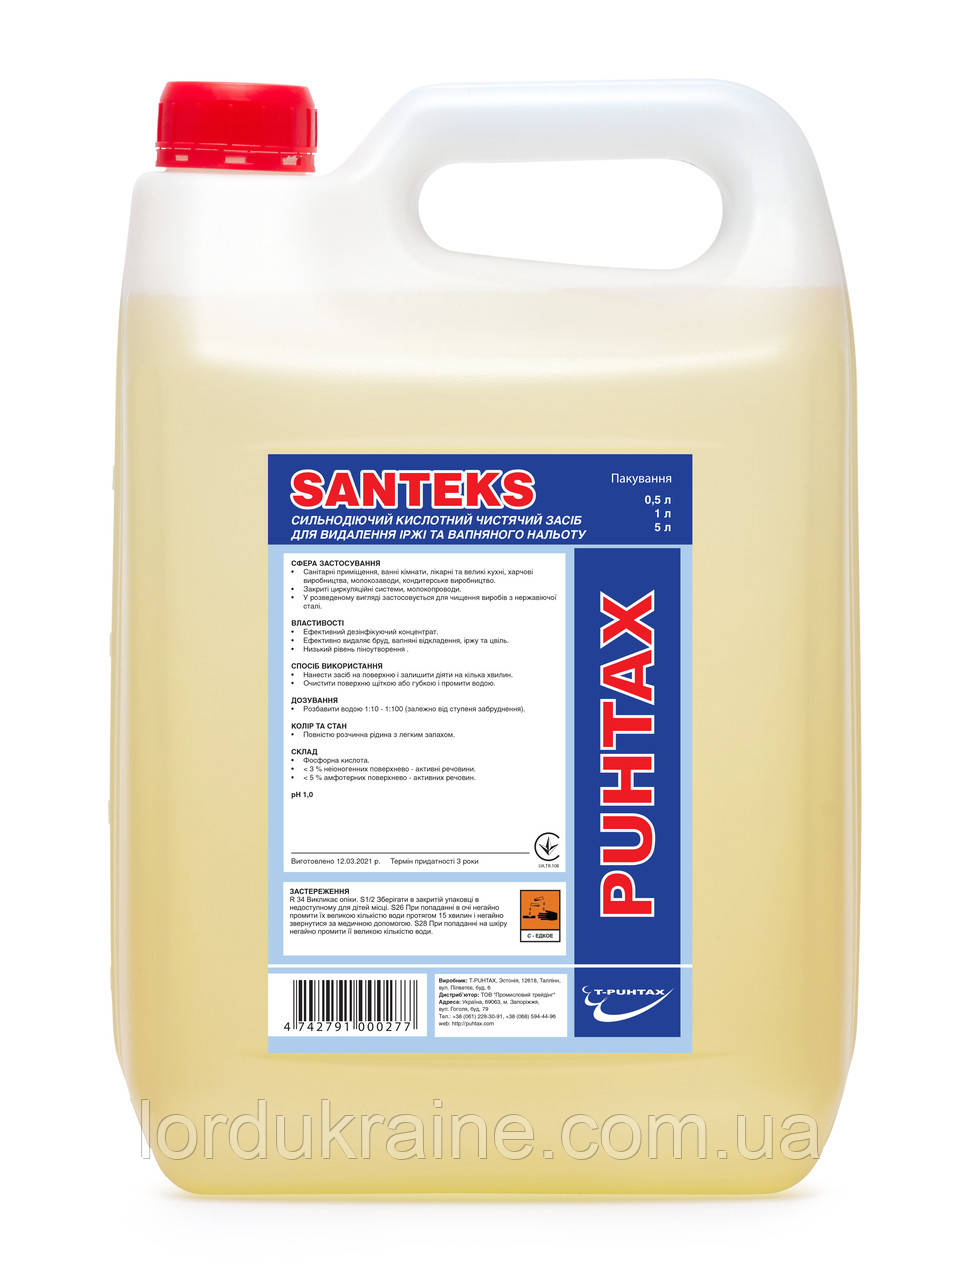 Сильнодіючий кислотний миючий засіб для видалення іржі та вапняного нальоту SANTEKS, (10 л) T-Puhtax